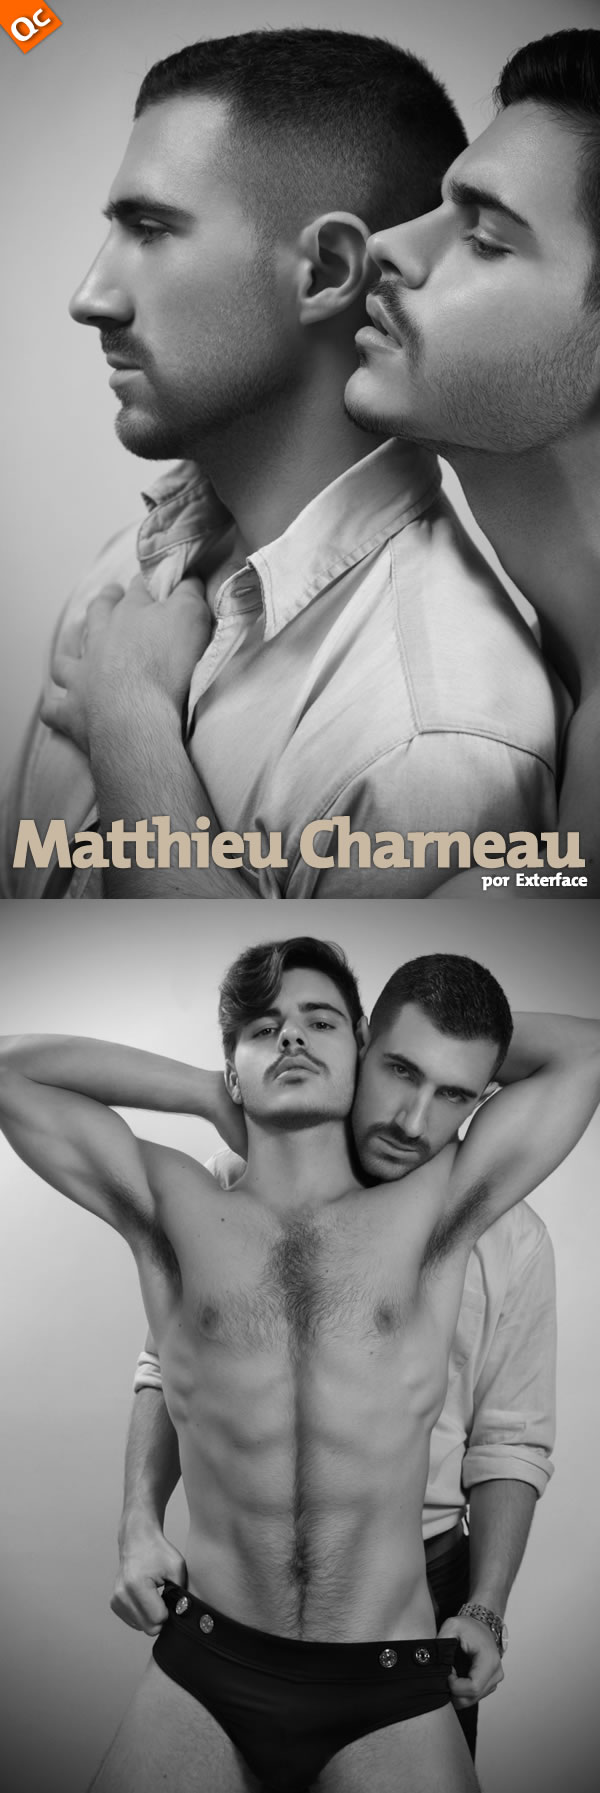 Exterface: Matthieu Charneau & Matthew Zink